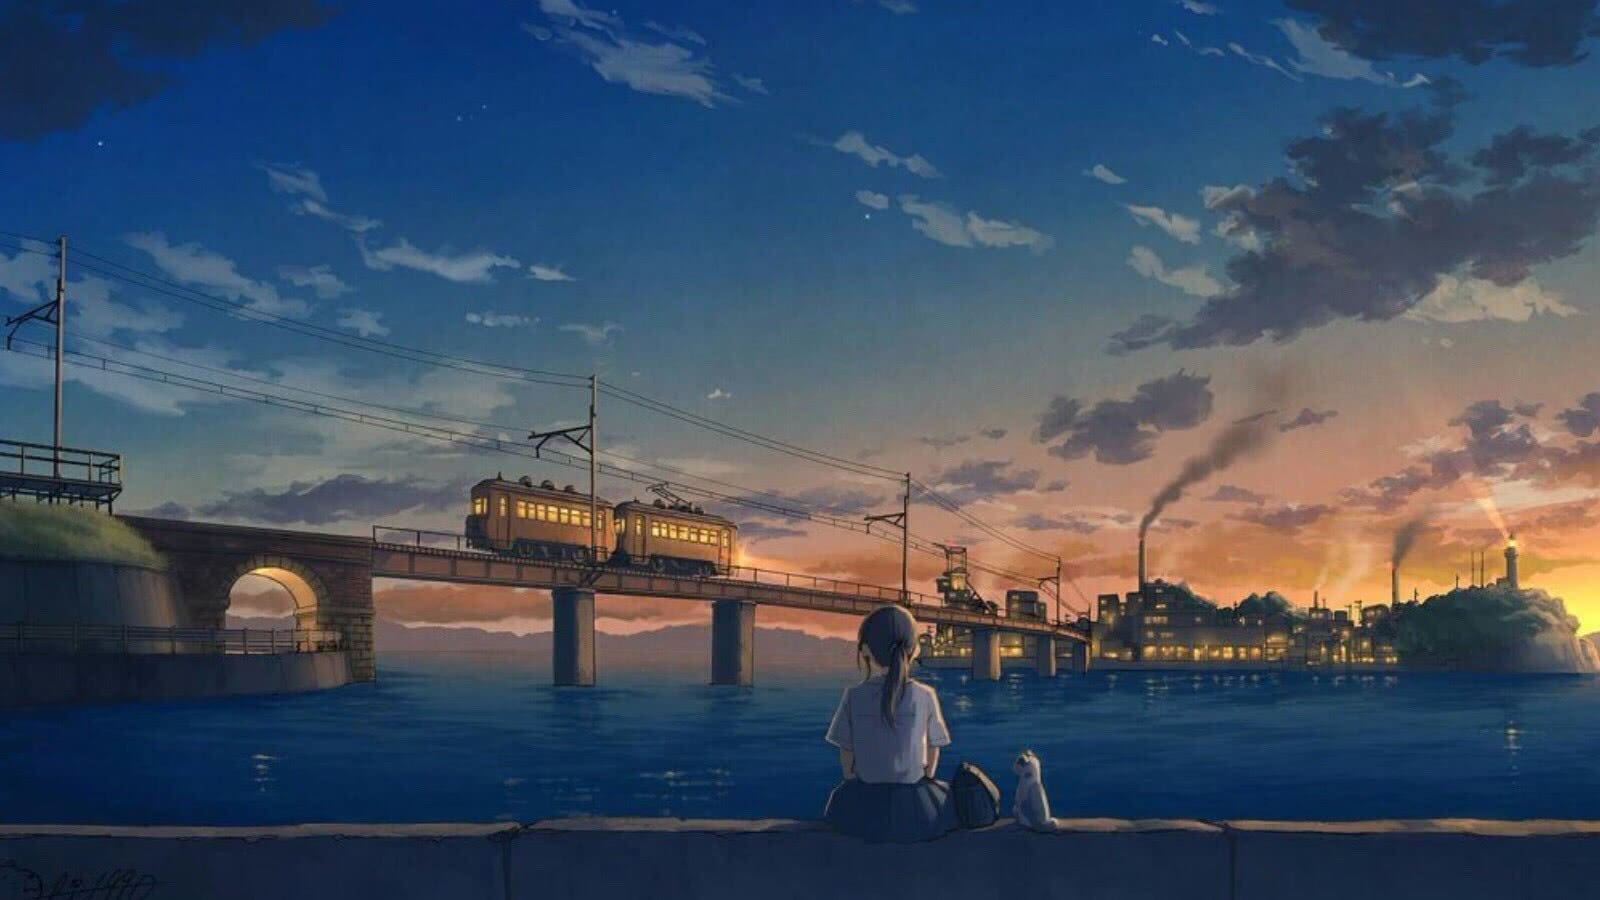 宫崎骏的世界 - 堆糖,美图壁纸兴趣社区